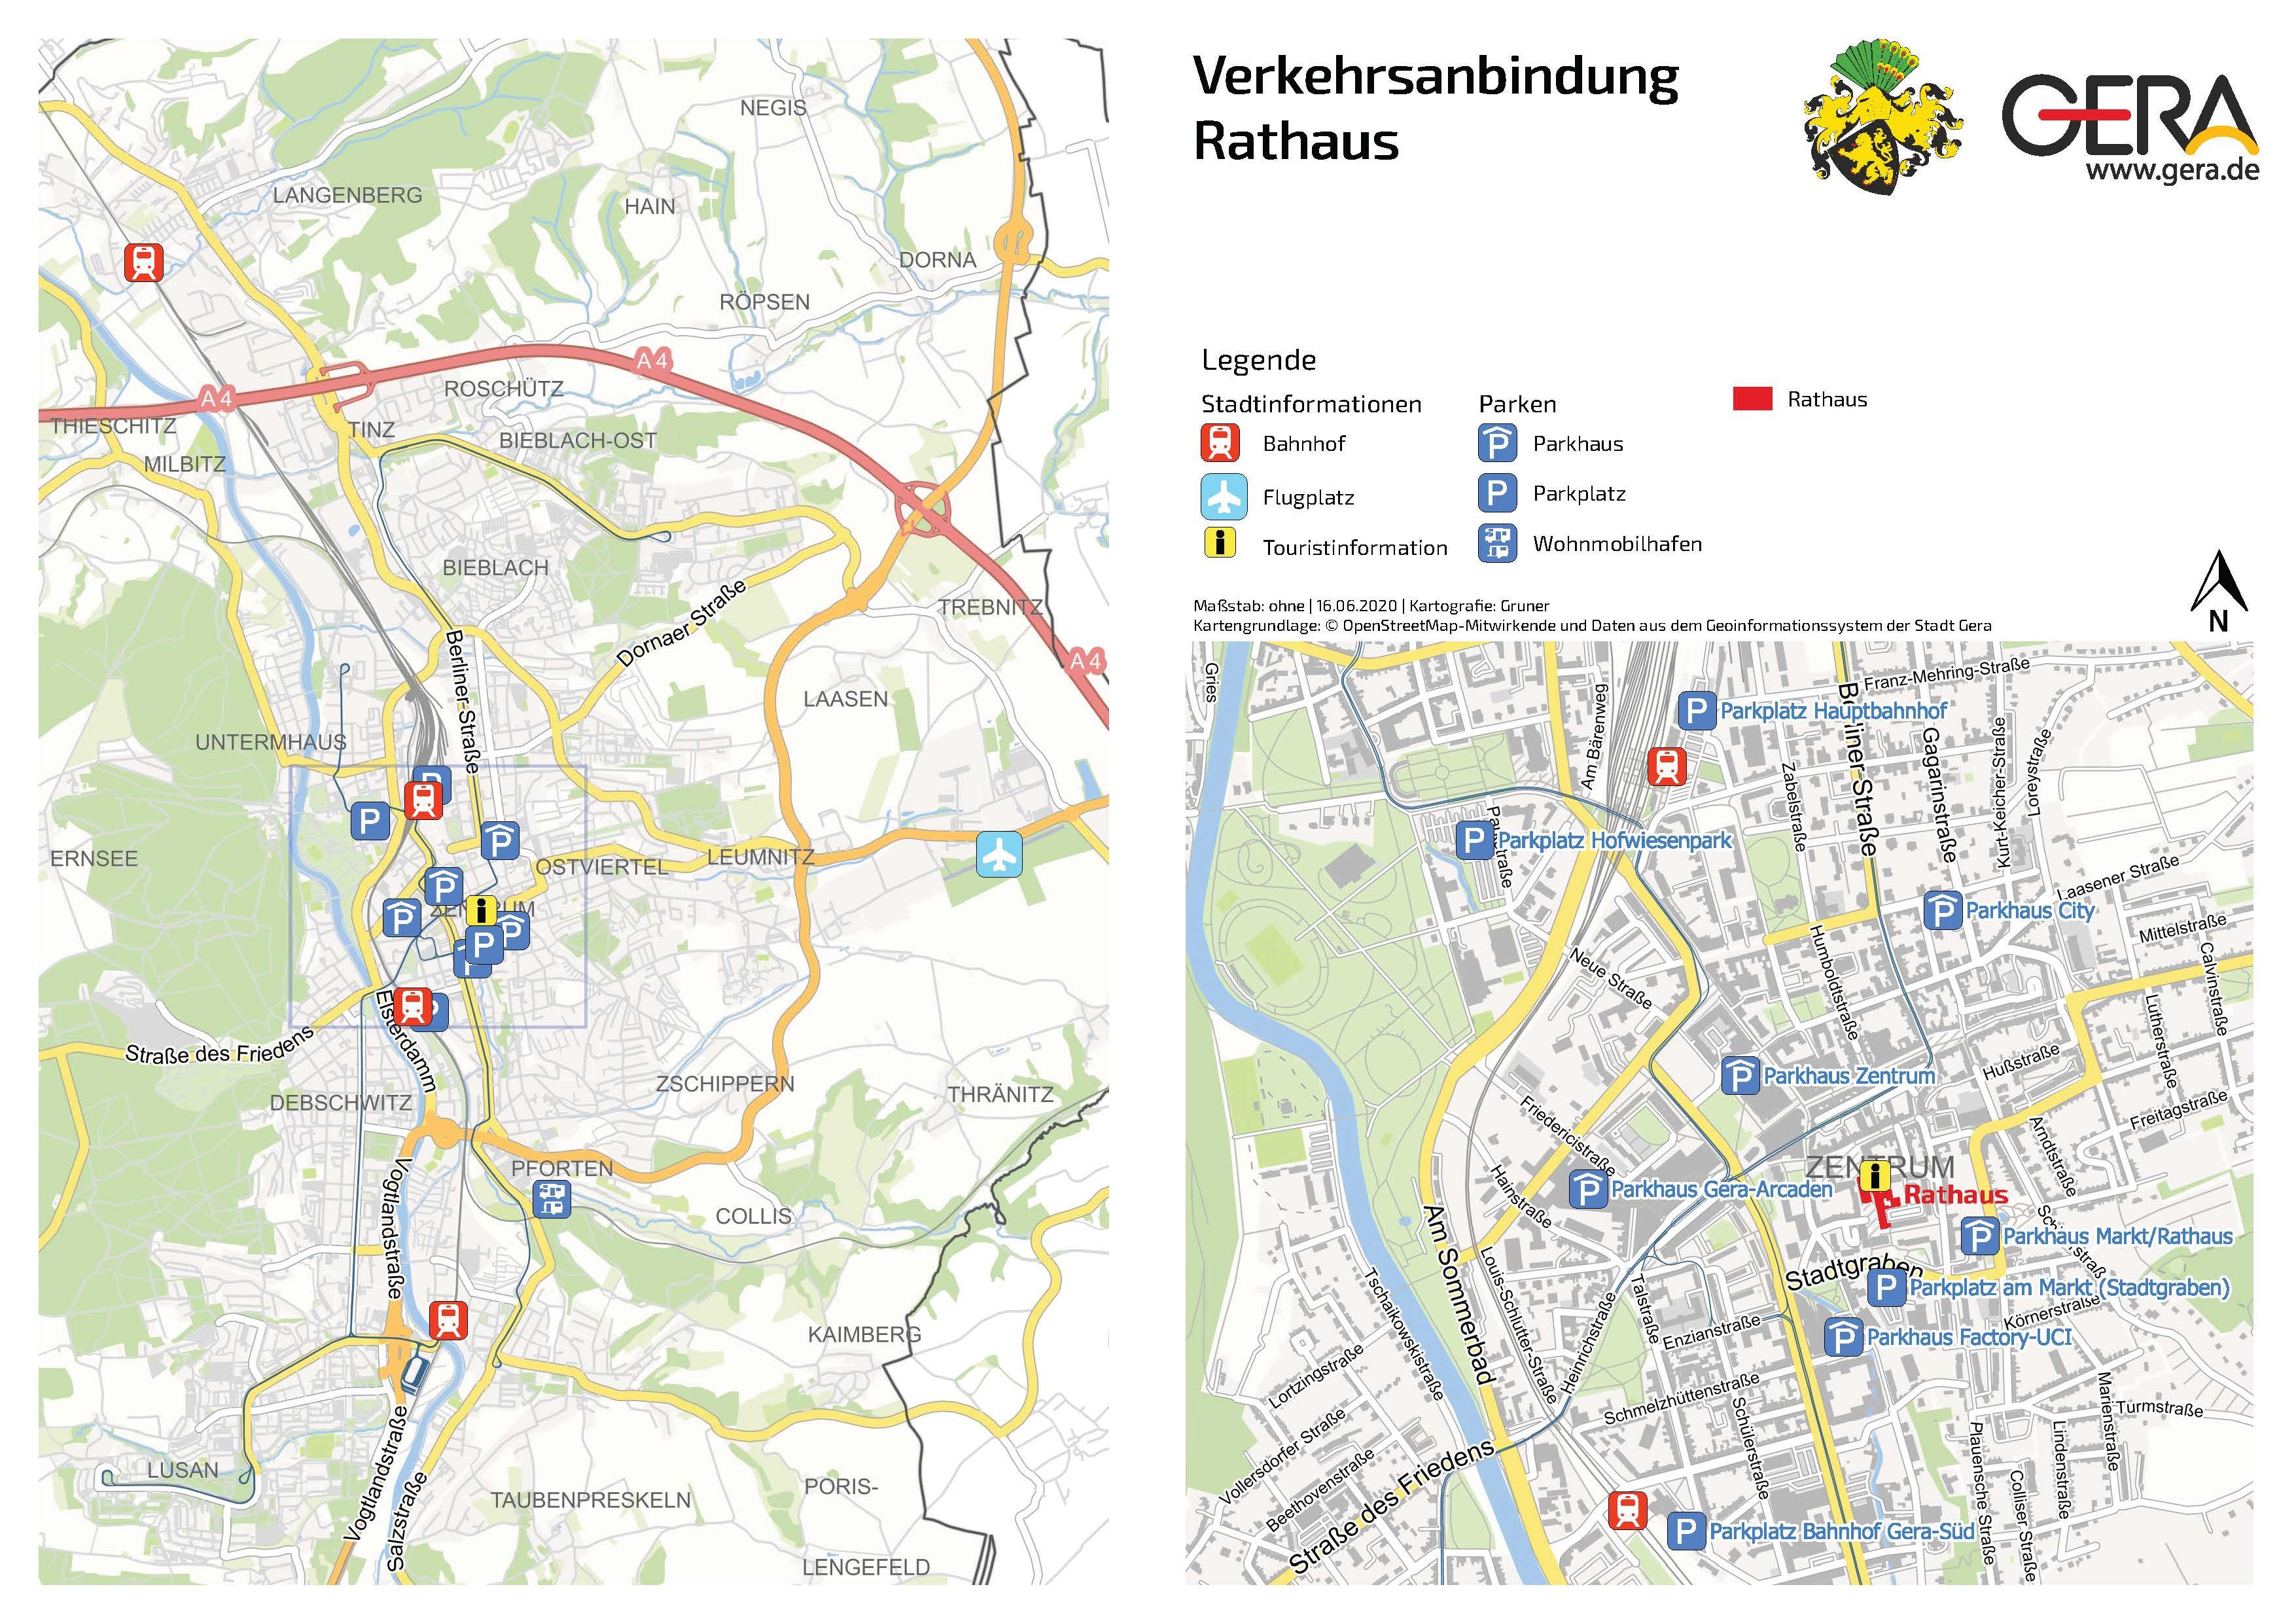 Karte der Verkehrsanbindung zum Rathaus